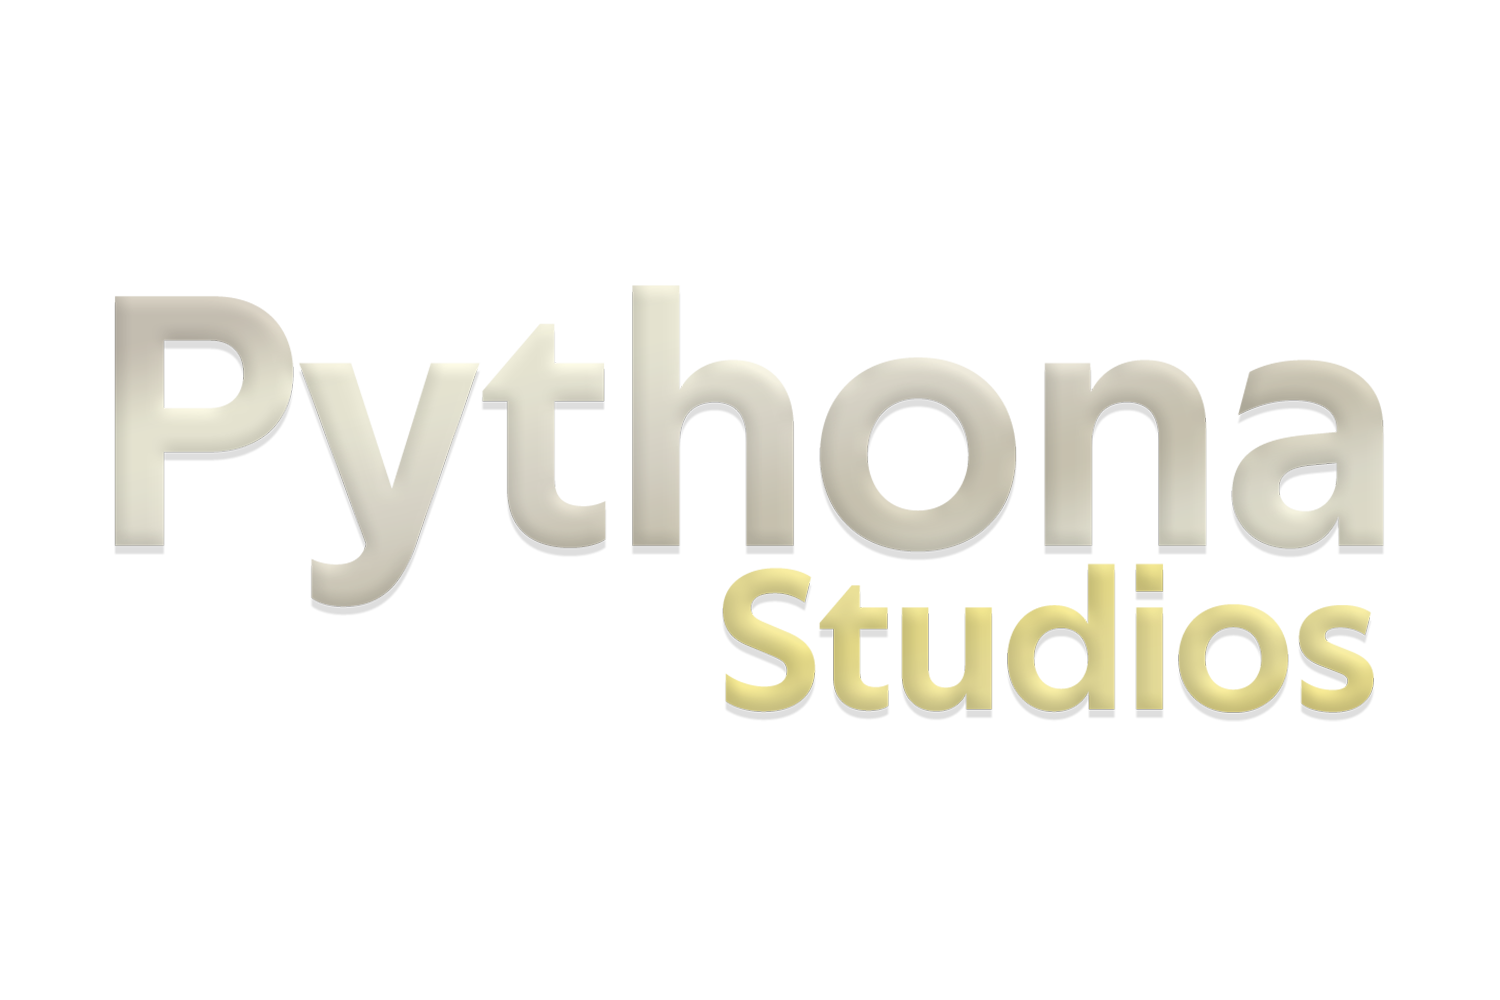 Pythona Studios Merchandise